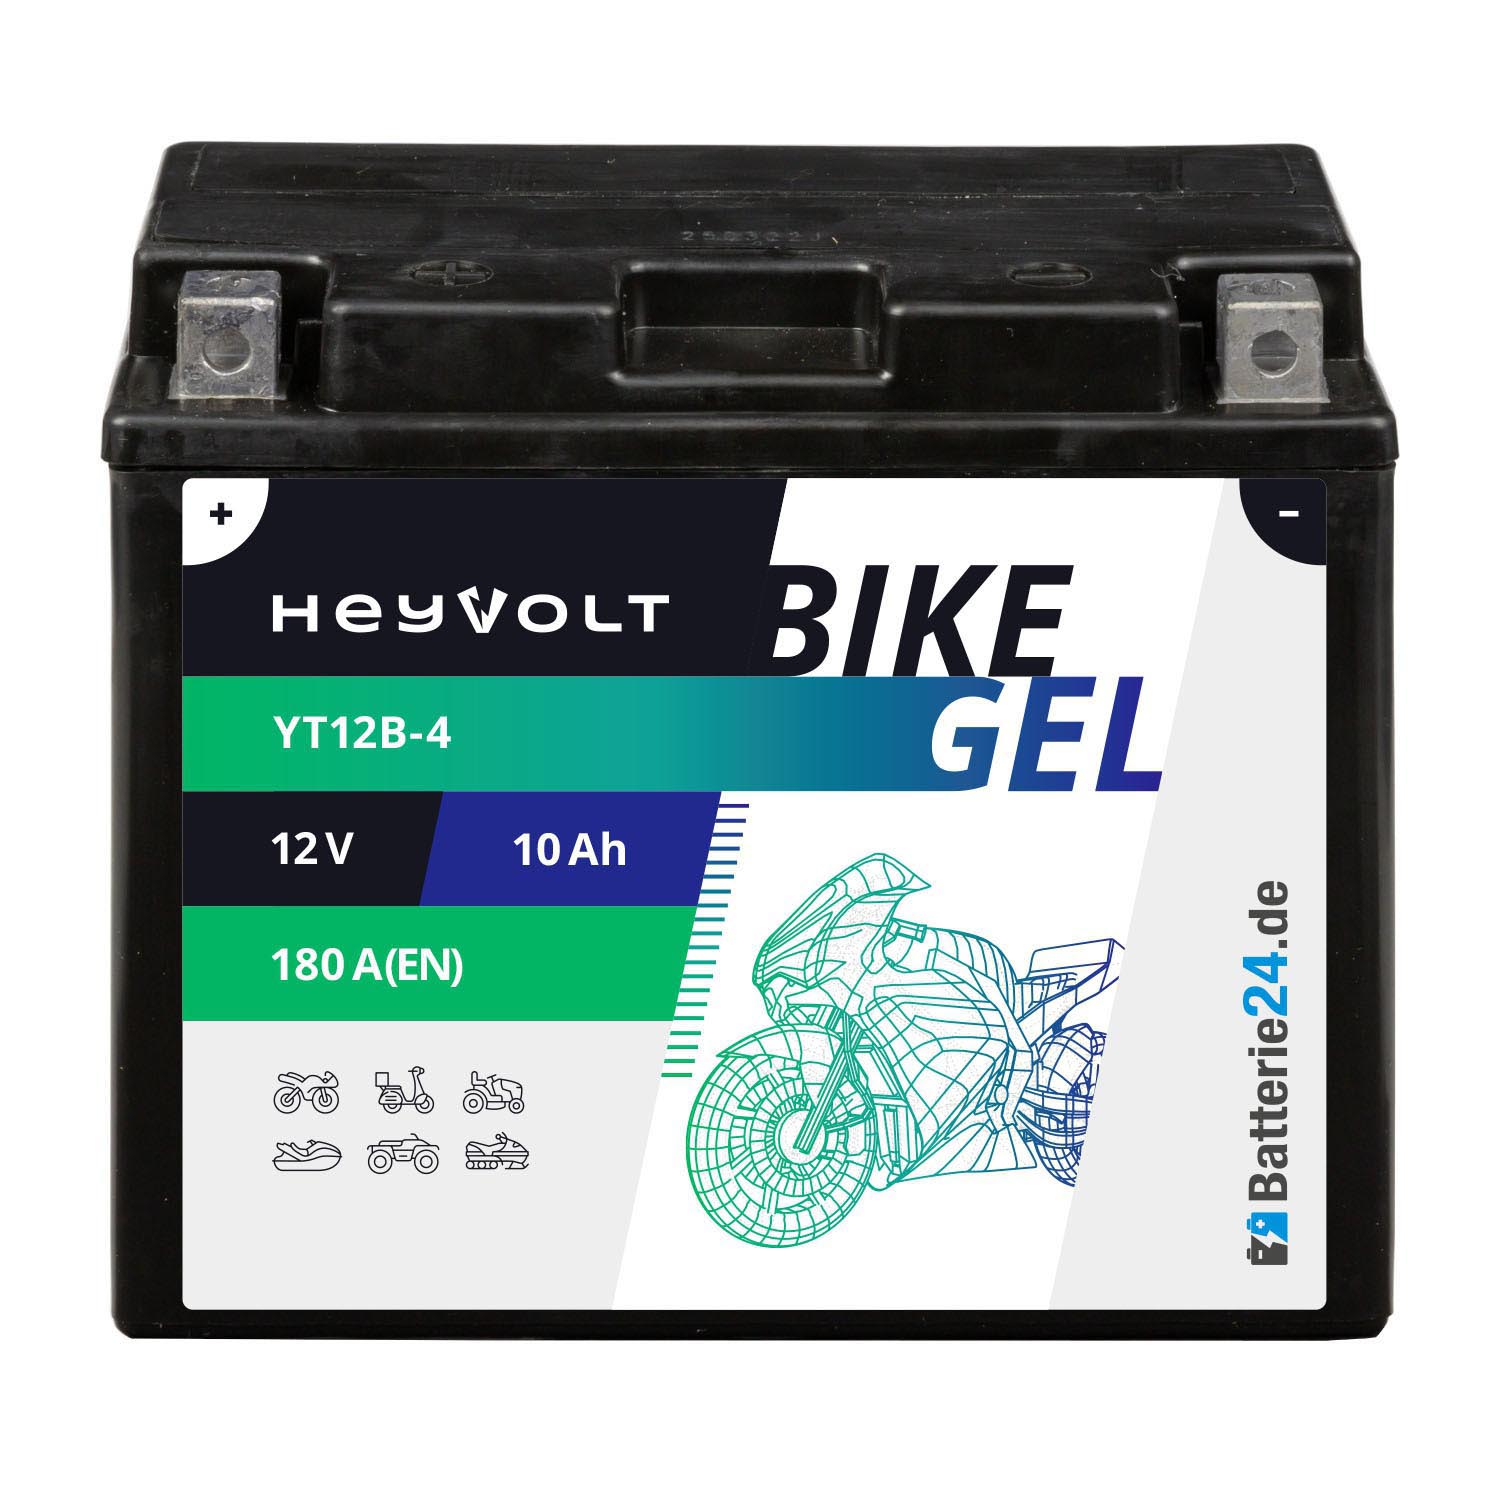 HeyVolt BIKE GEL Motorradbatterie YT12B-4 51015 12V 10Ah